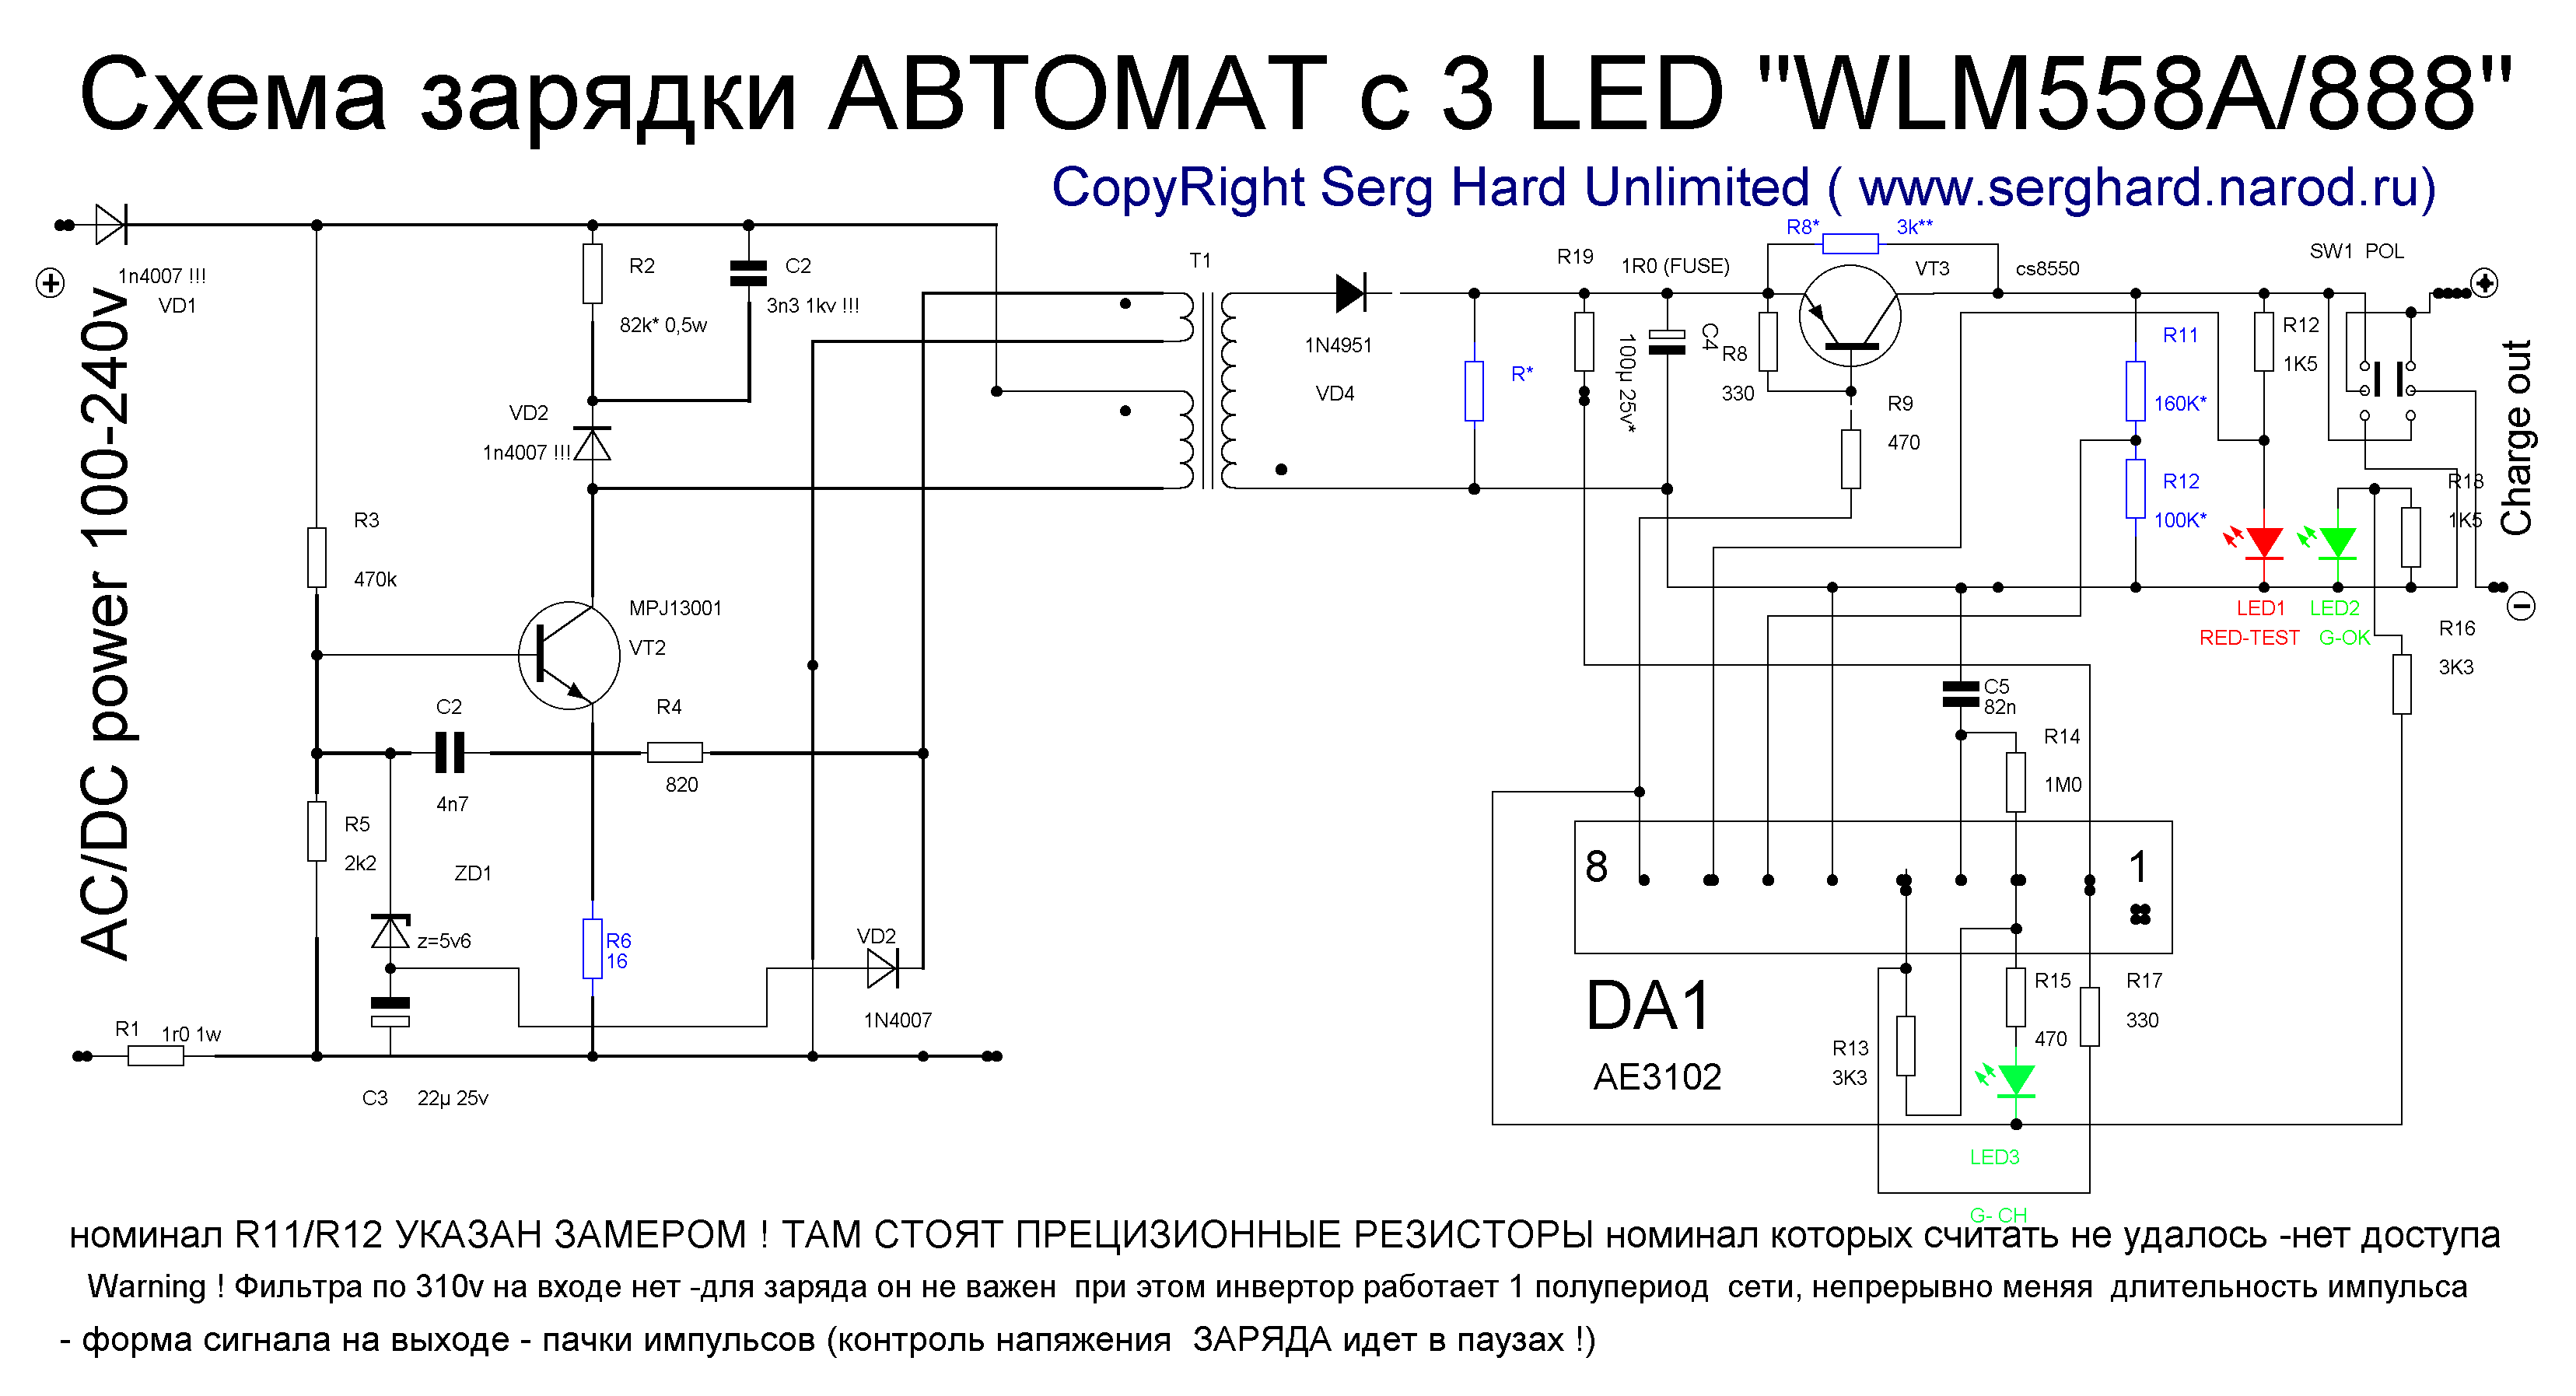 Схема зарядки автомат с 3 LED WLM558A/888